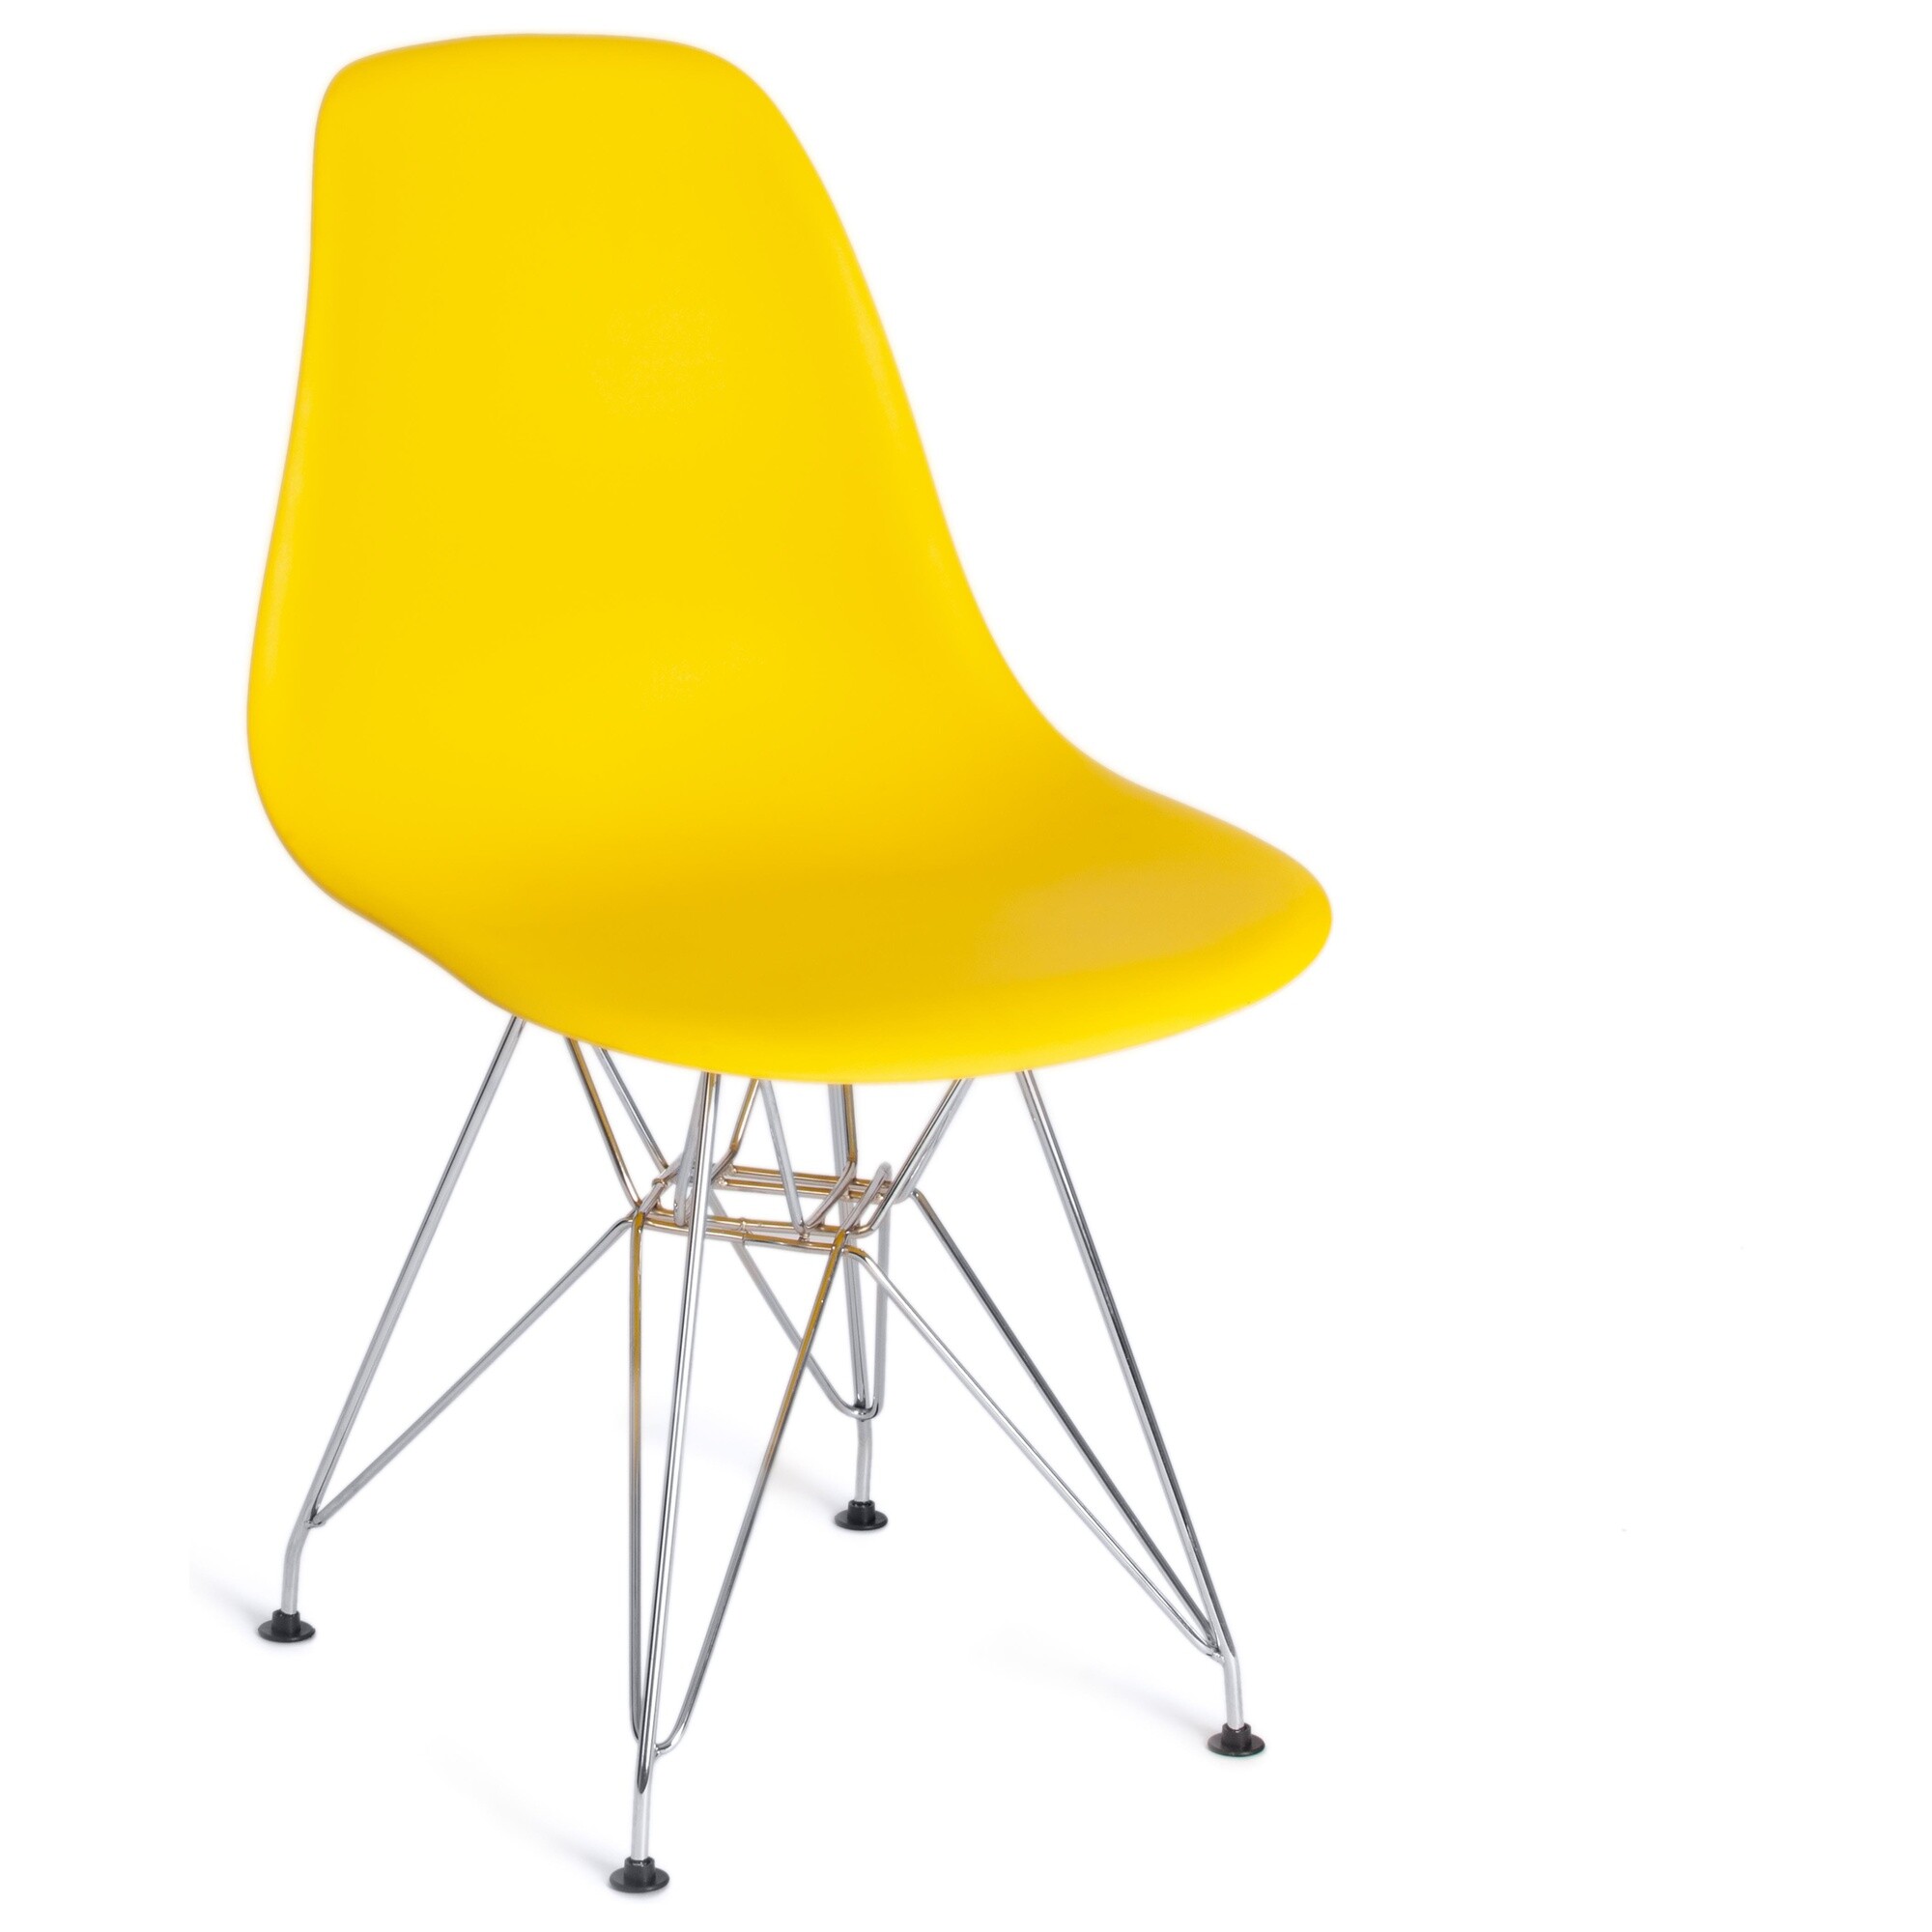 Стул пластиковый на металлических ножках желтый Cindy Iron Chair